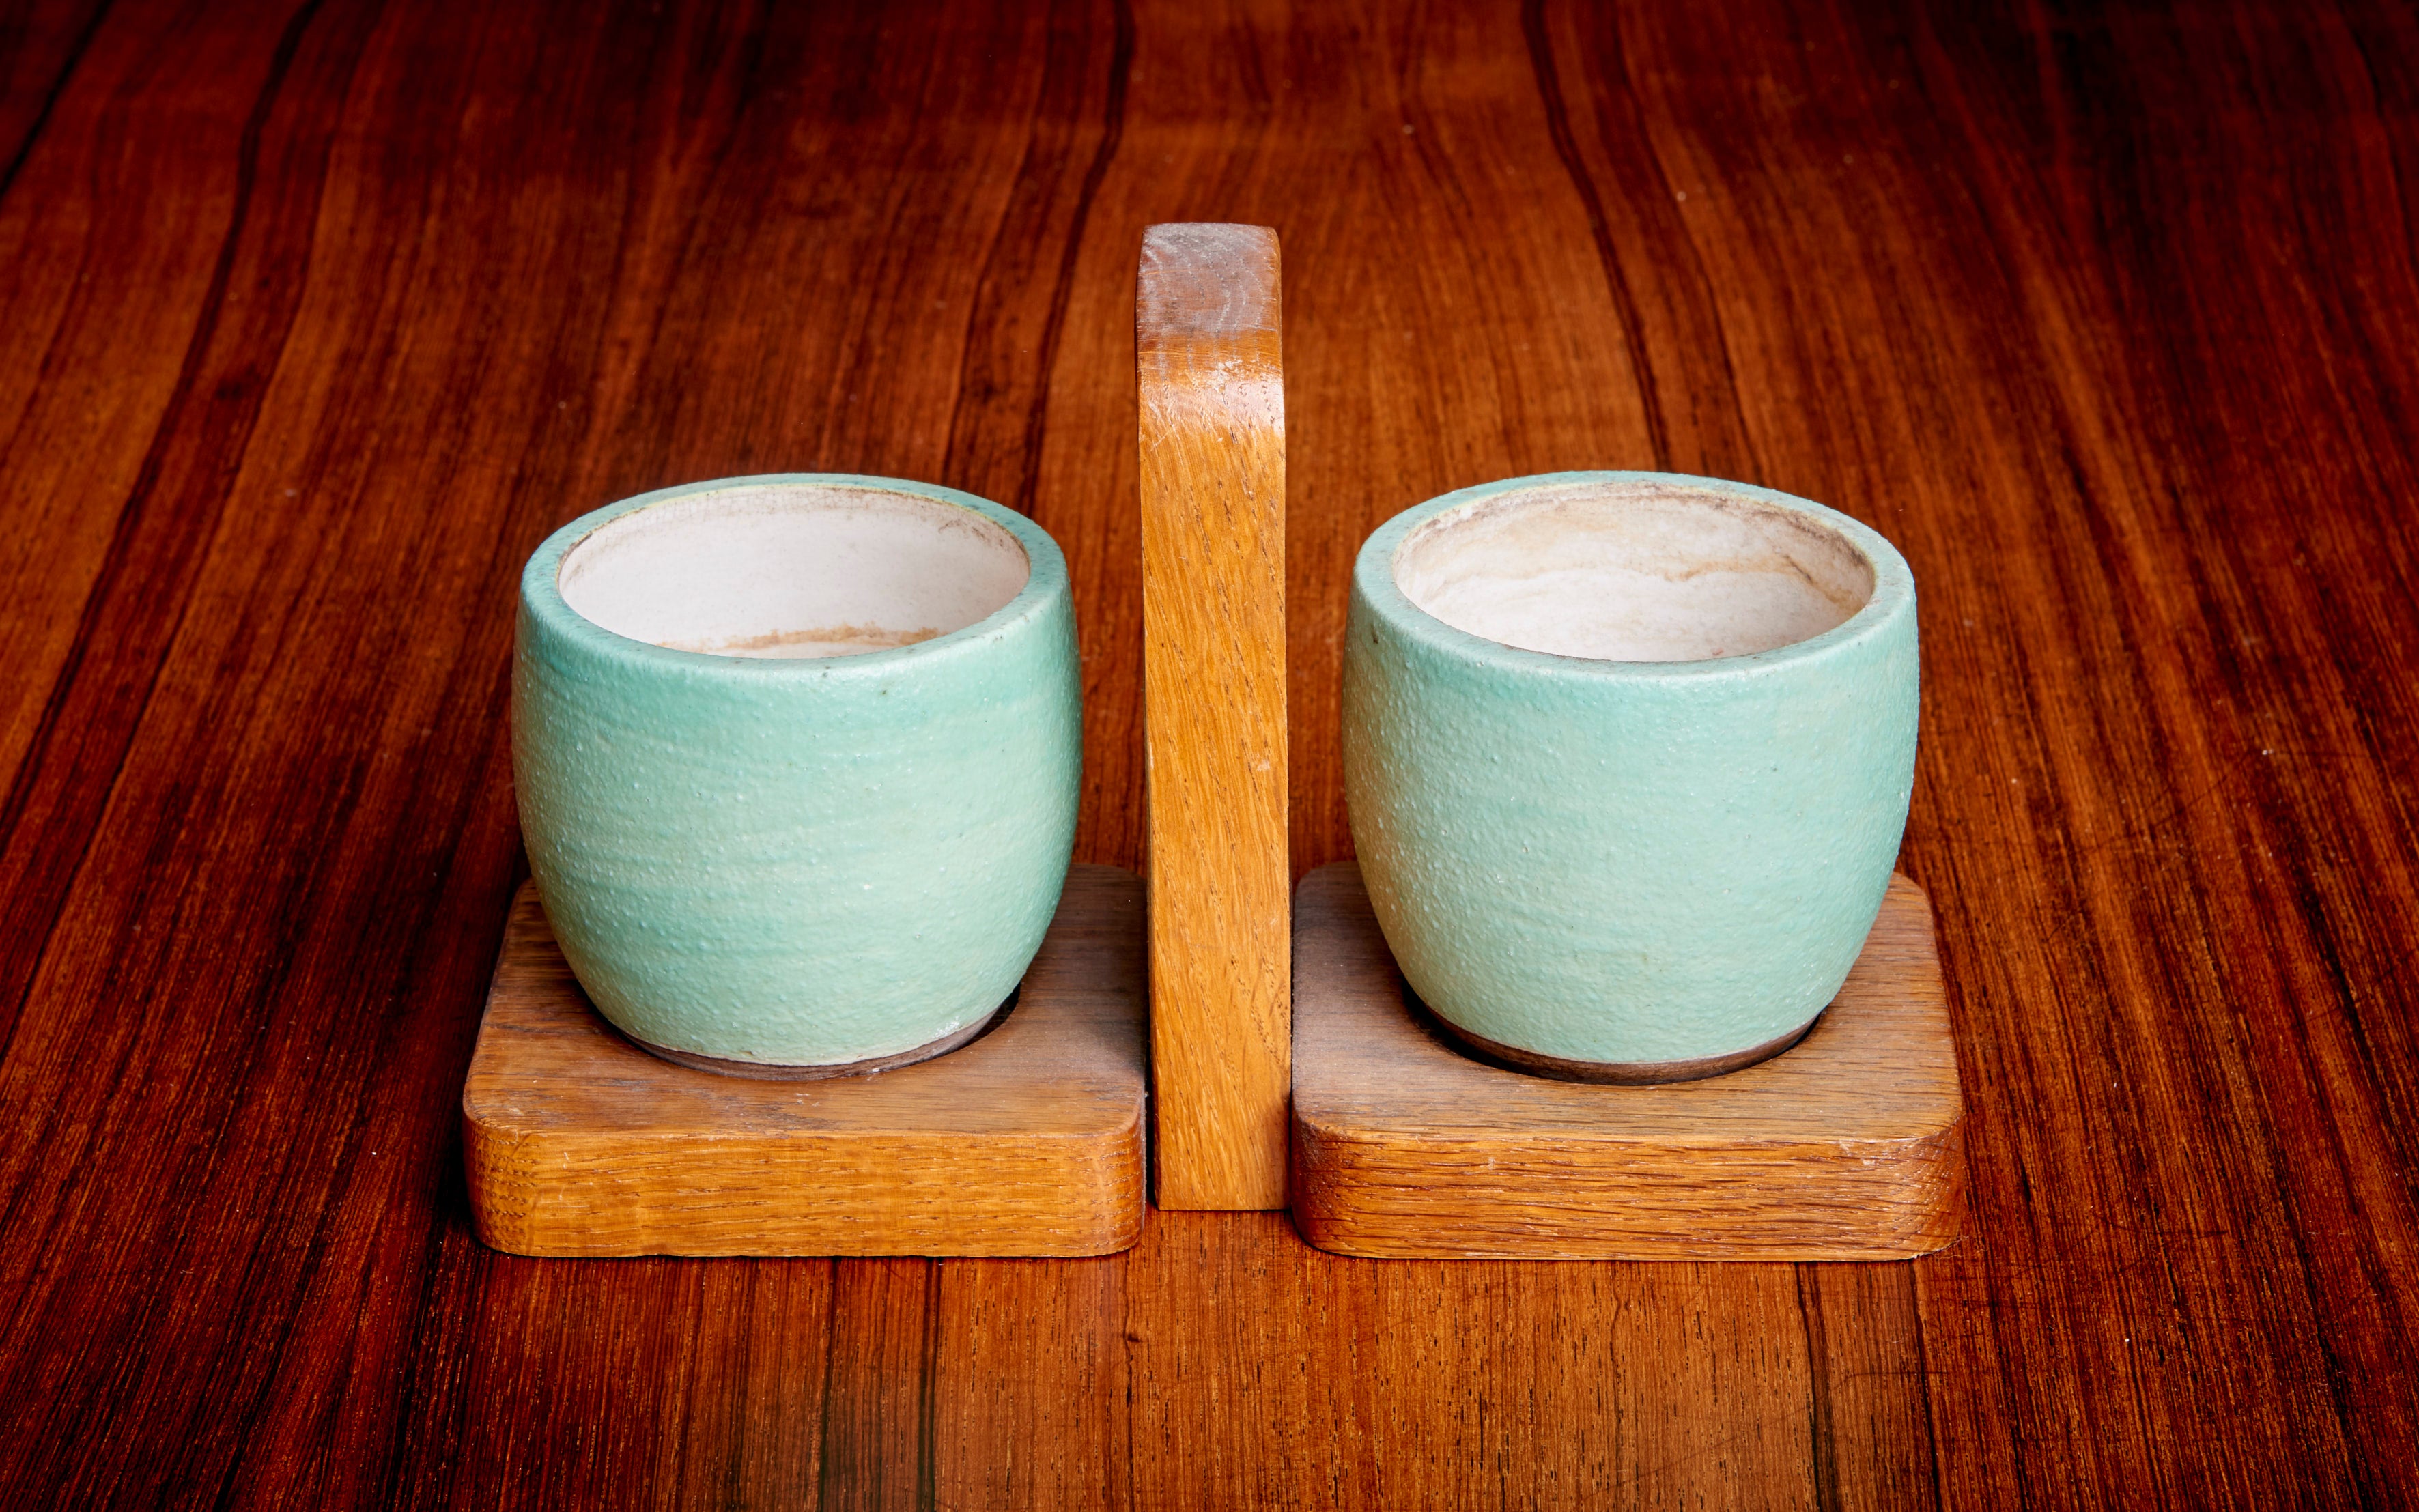 Très joli ensemble de deux mugs en céramique Keramos vert/marron et plateau en chêne en bon état.

